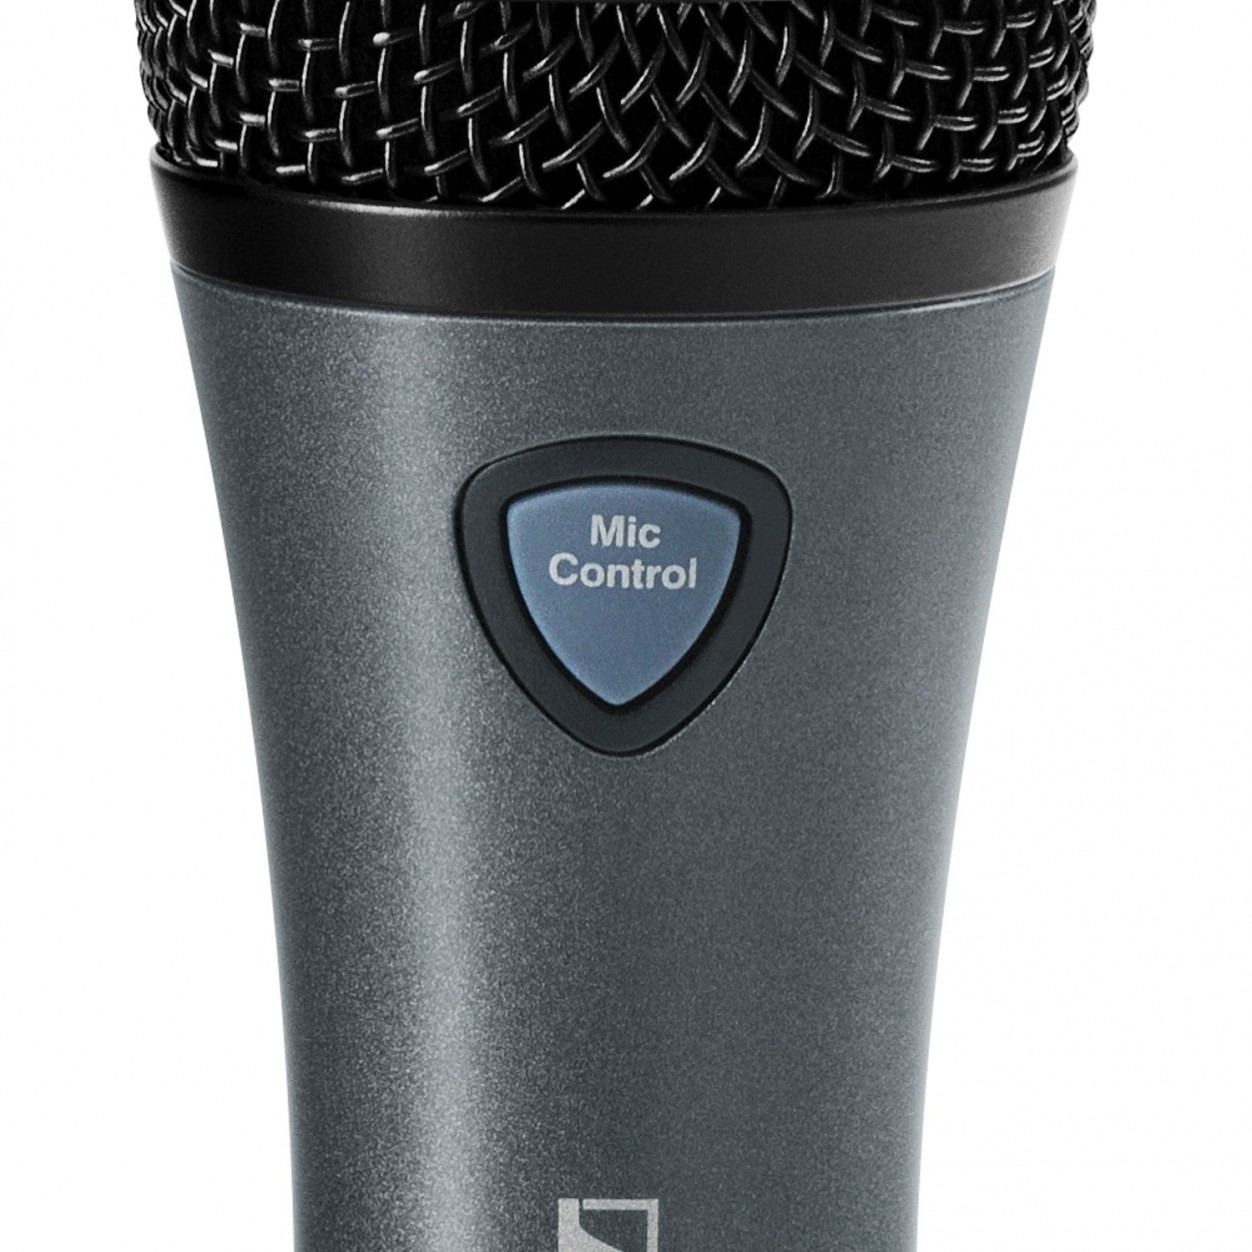 Sennheiser E835 FX вокальный микрофон с кнопкой управления процессором TC-Helicon™